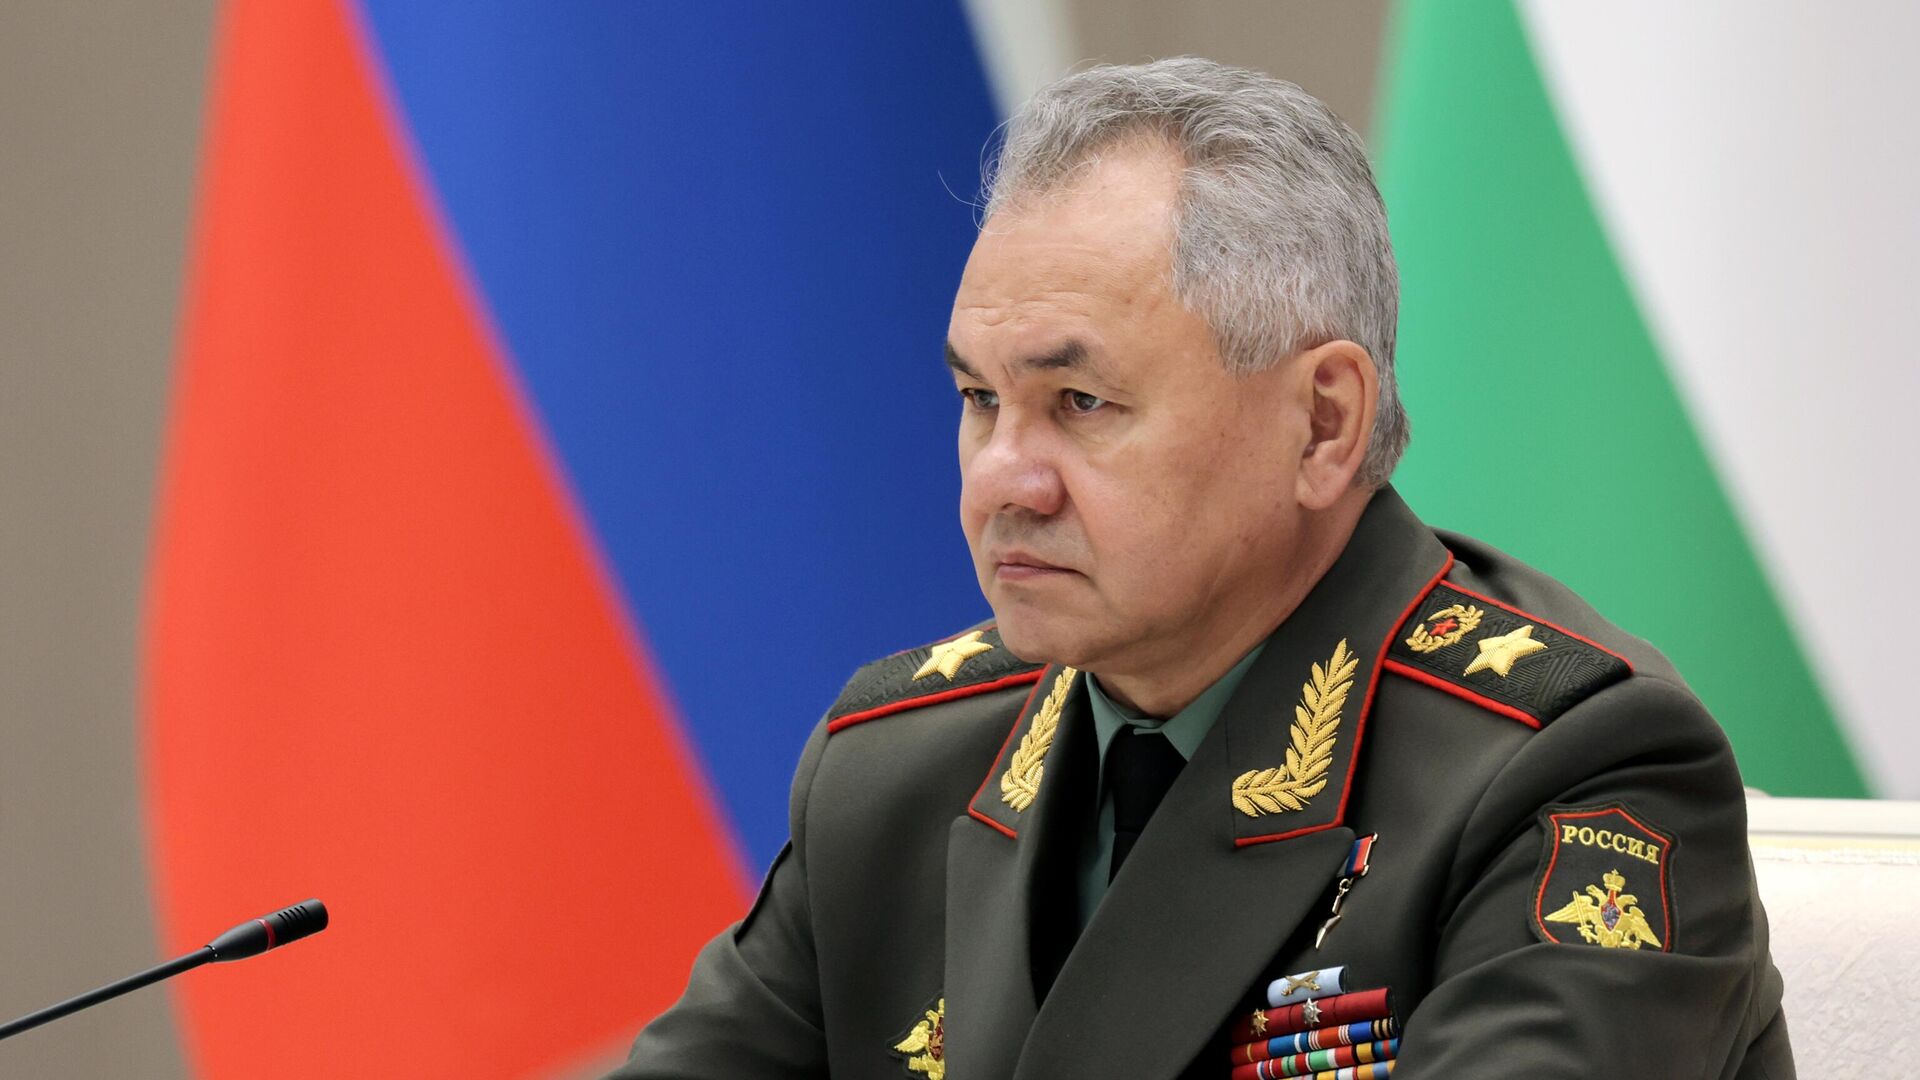 Шойгу: нужно довести численность ВС РФ до 1,5 млн военнослужащих